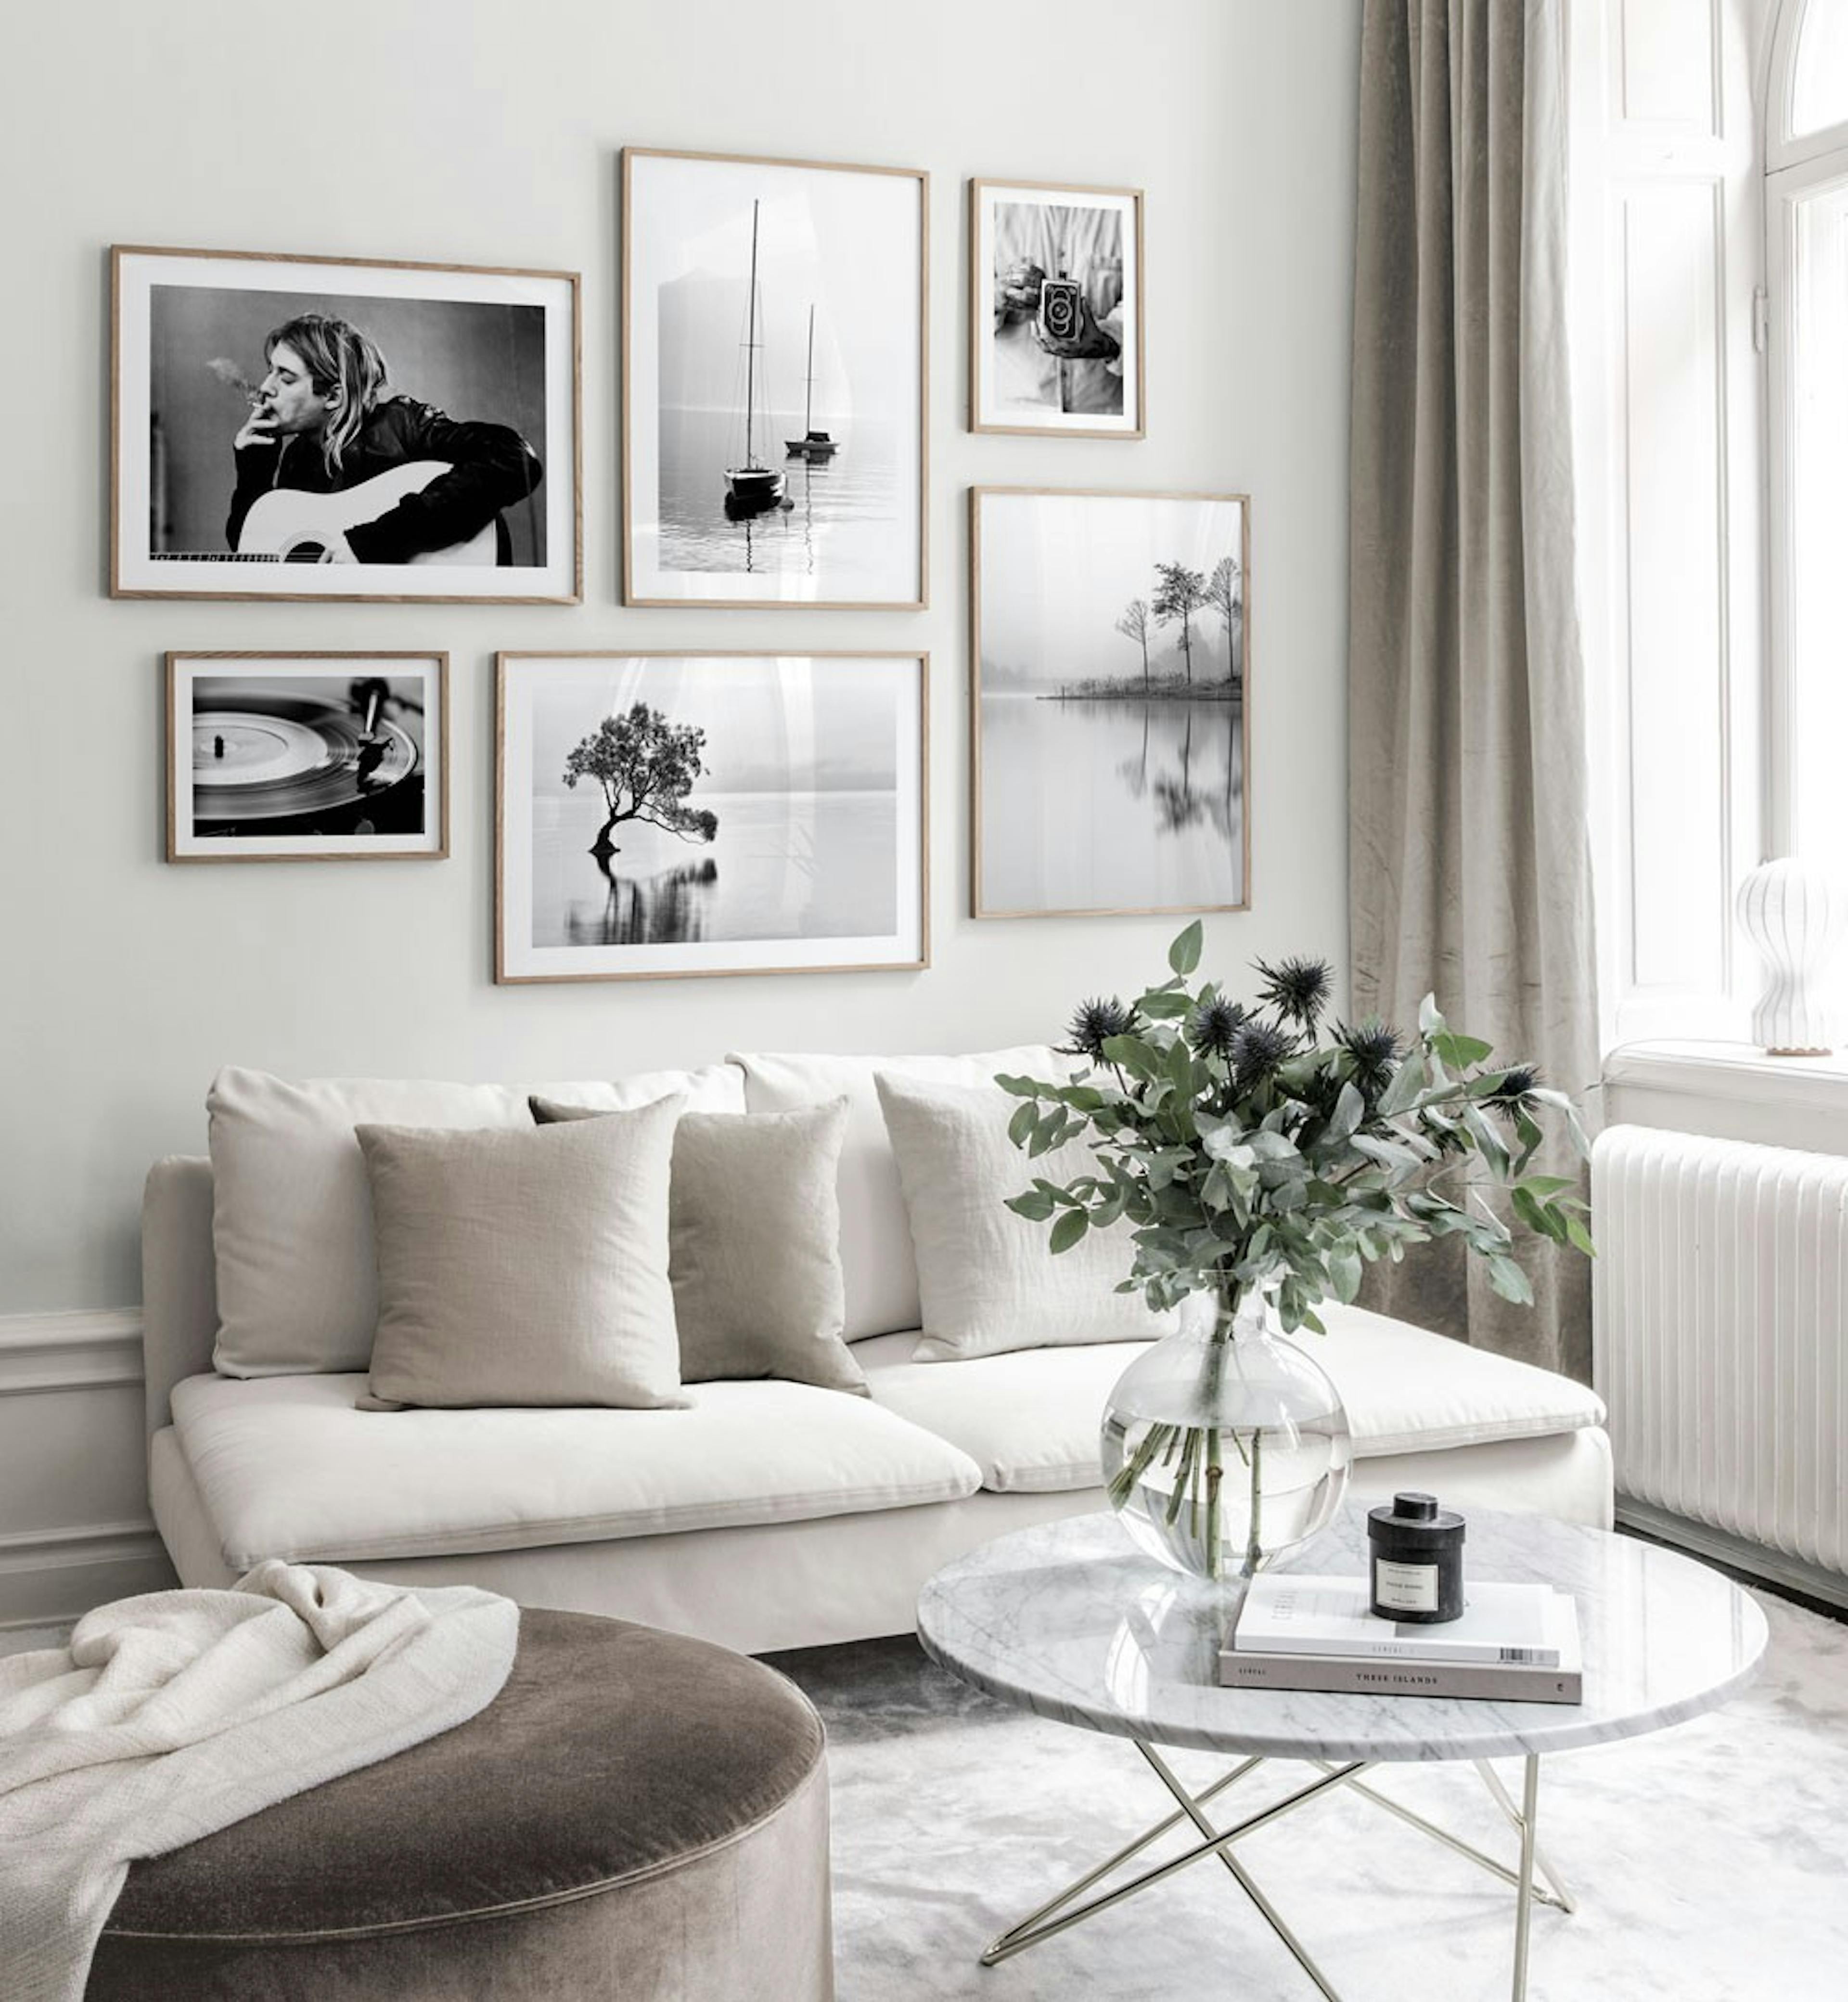 흑백 포스터가 있는 스칸디나비아 디자인의 갤러리 벽